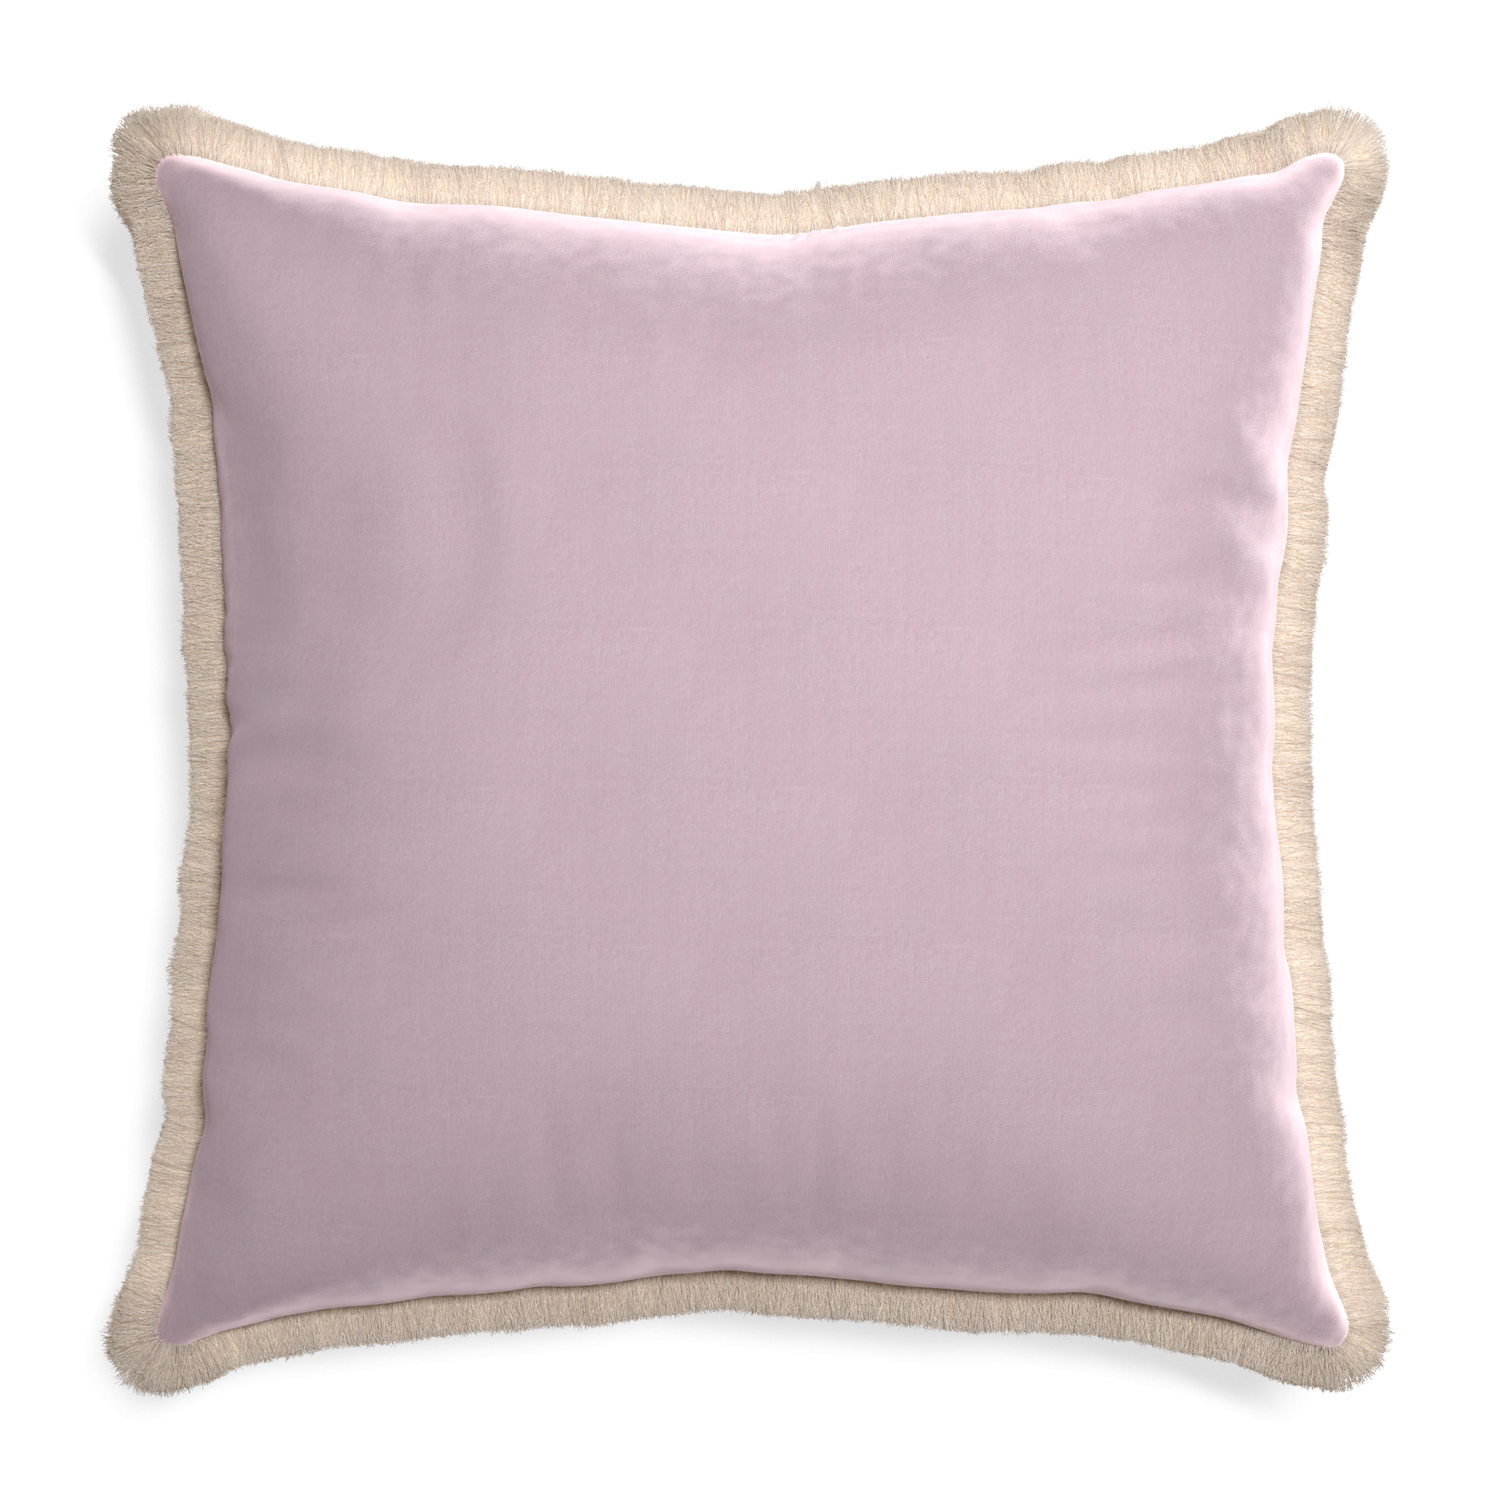 Euro-sham lilac velvet custom pillow with cream fringe on white background